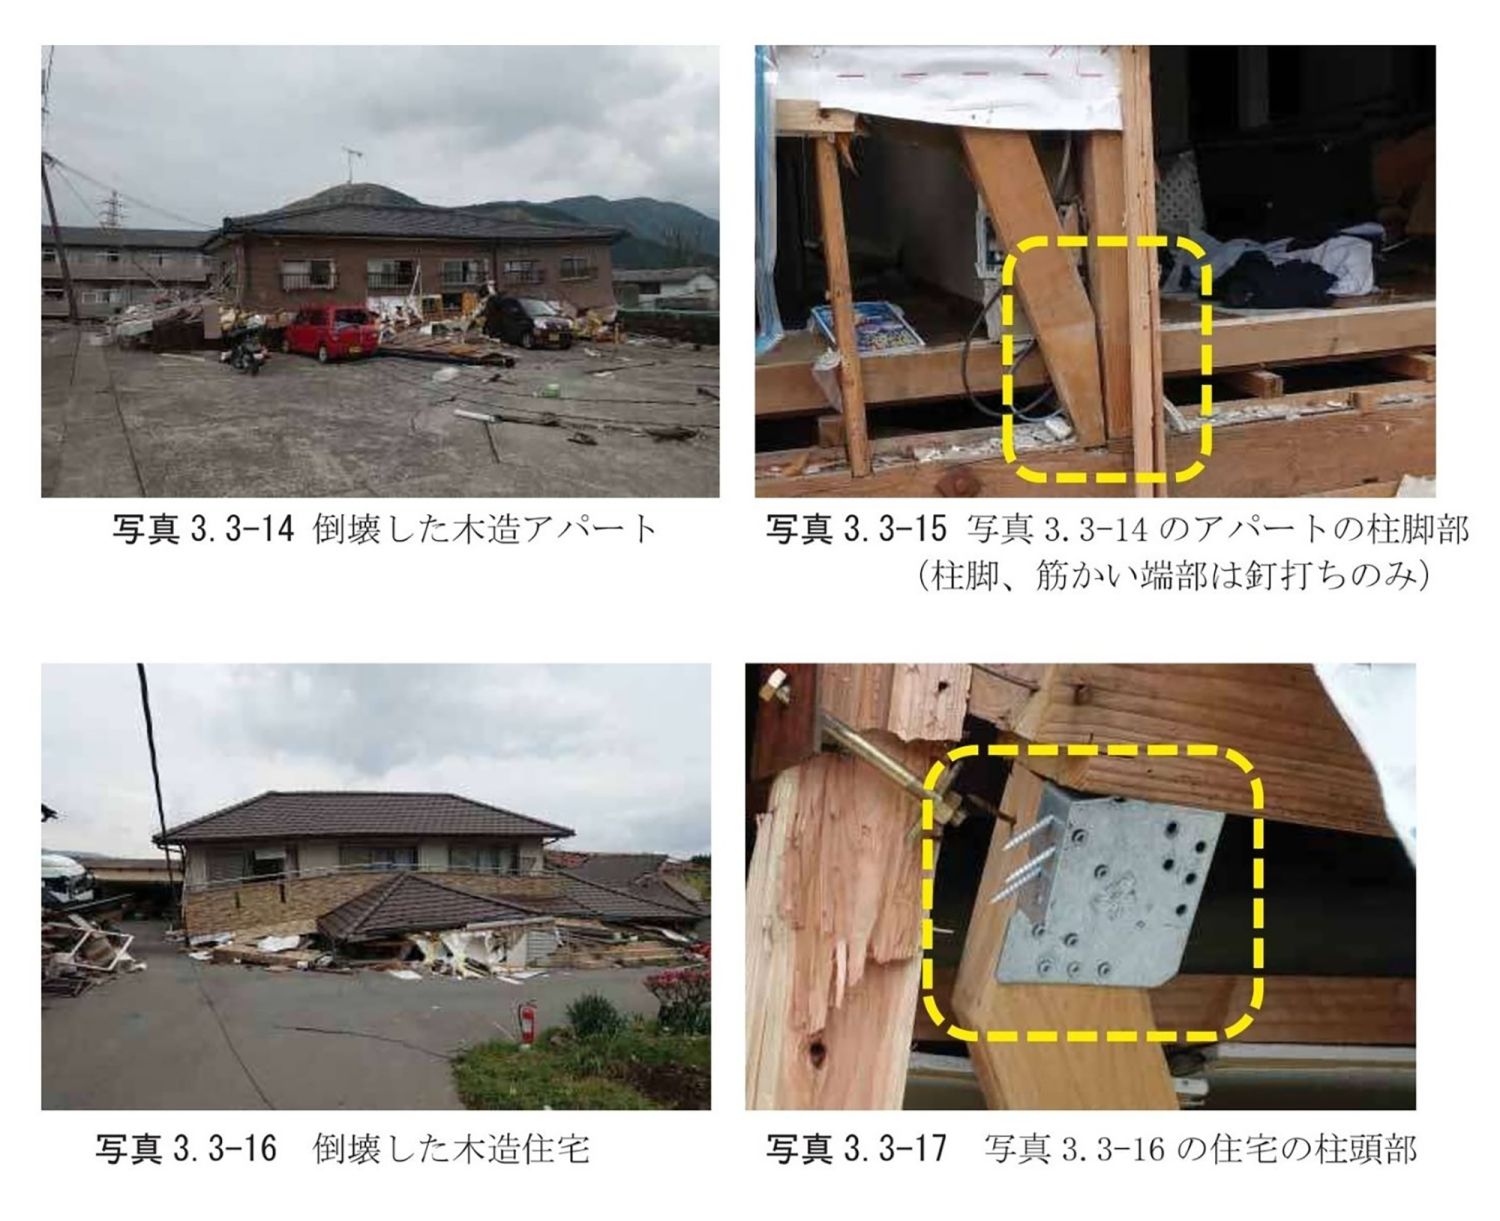 熊本地震の住宅倒壊状況から考える耐震